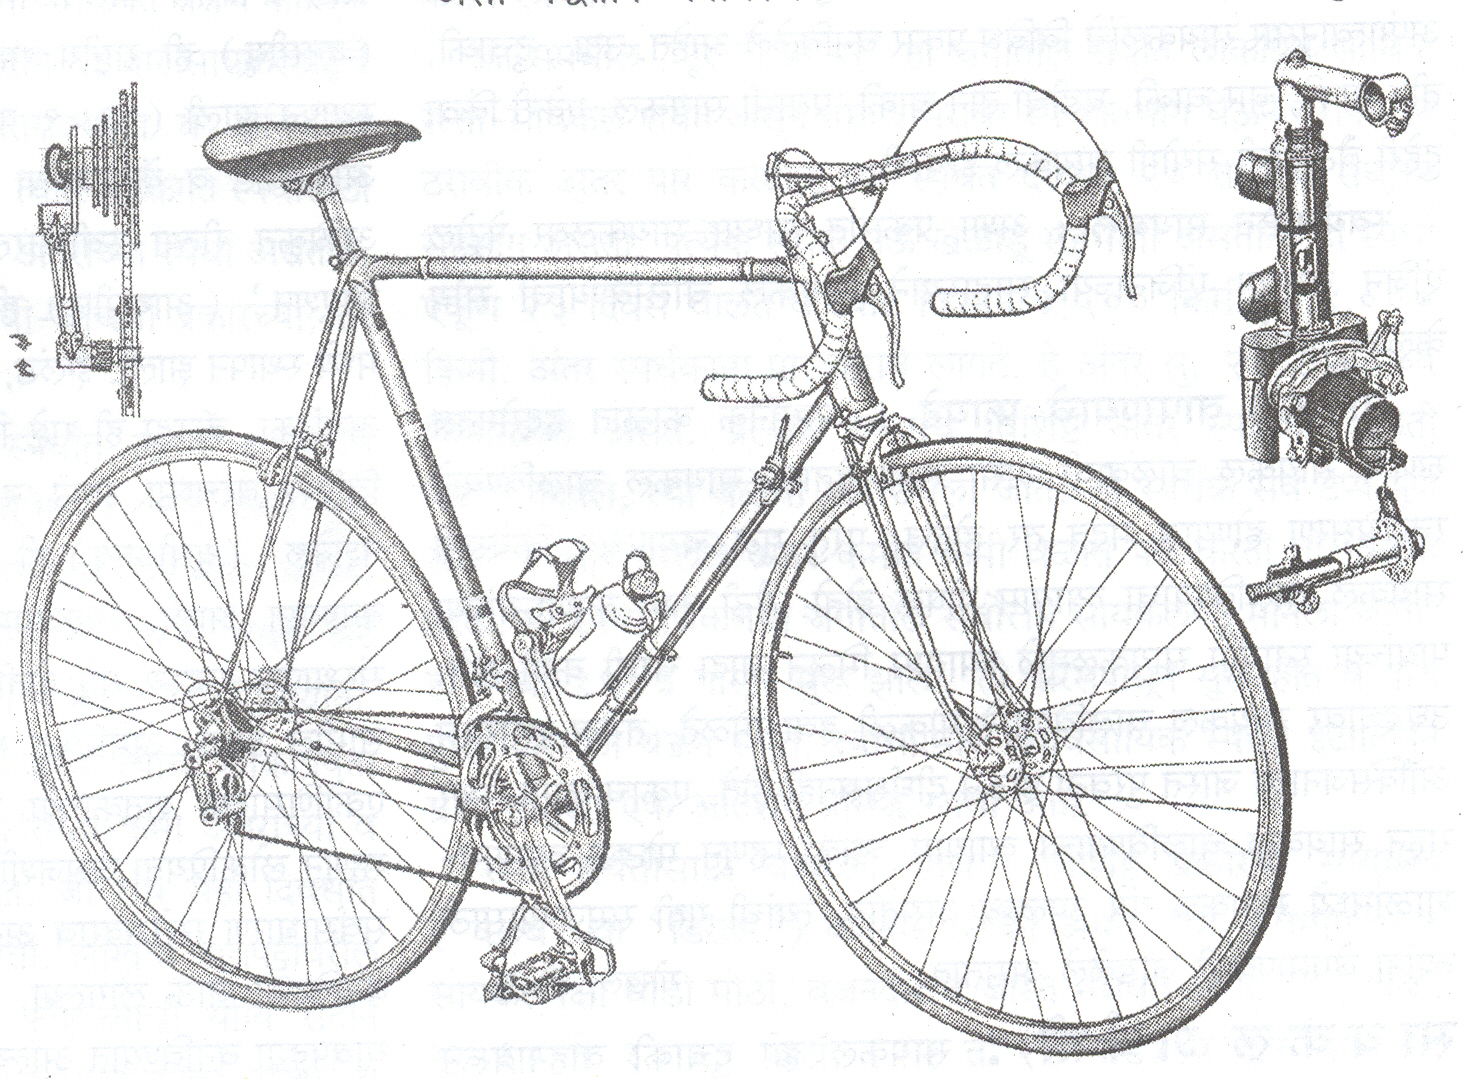 आ. २. शर्यतीची आधुनिक सायकल (यामध्ये निरनिराळ्या अठ्ठावीस गती देणाऱ्या वेगबदलाचे दोन संच बाजूला दाखविले आहेत)